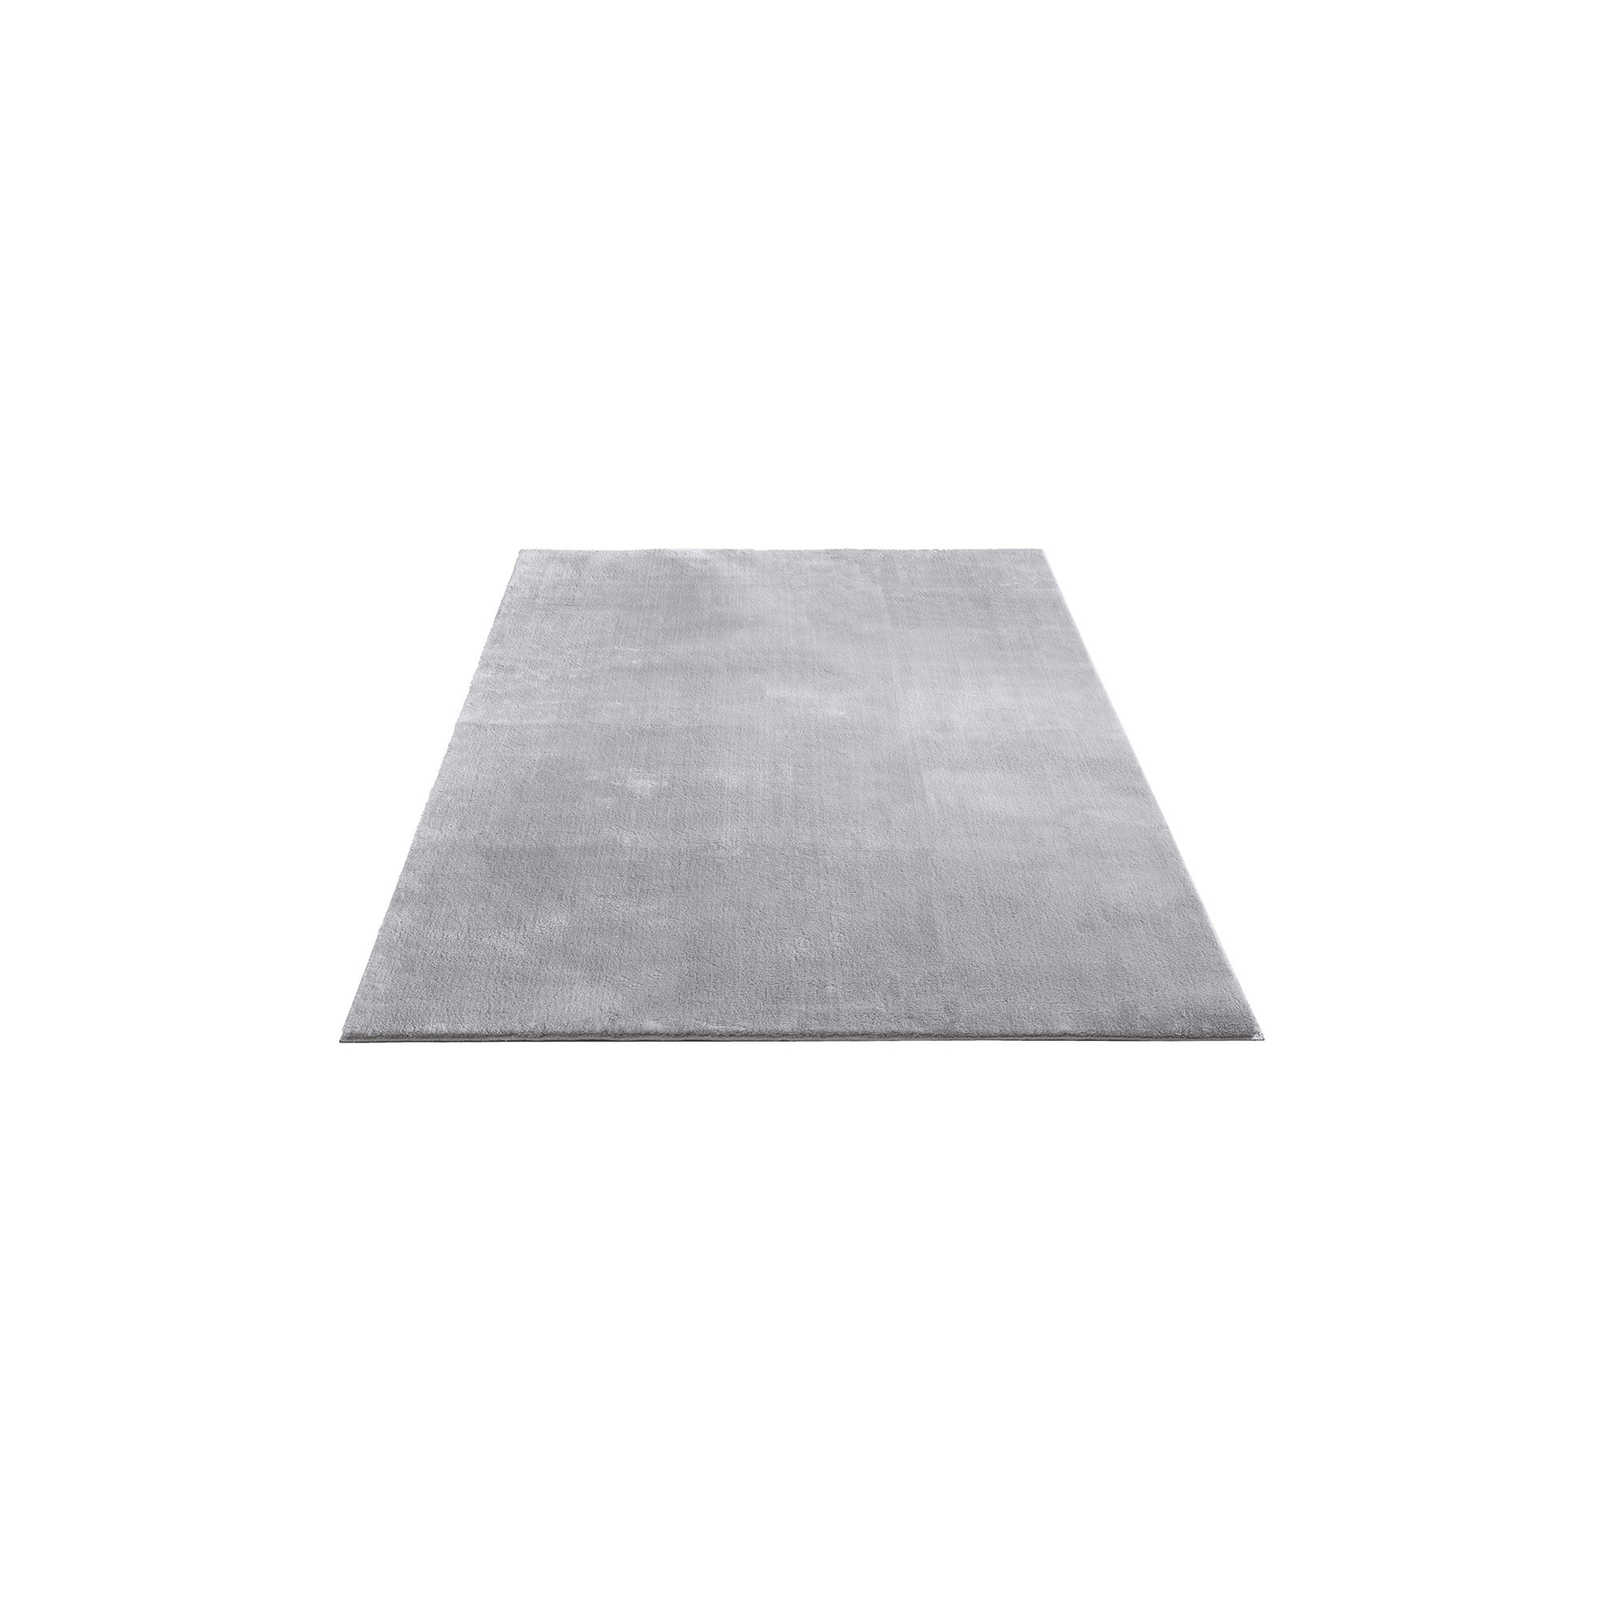 Fijn hoogpolig tapijt in grijs - 200 x 140 cm
